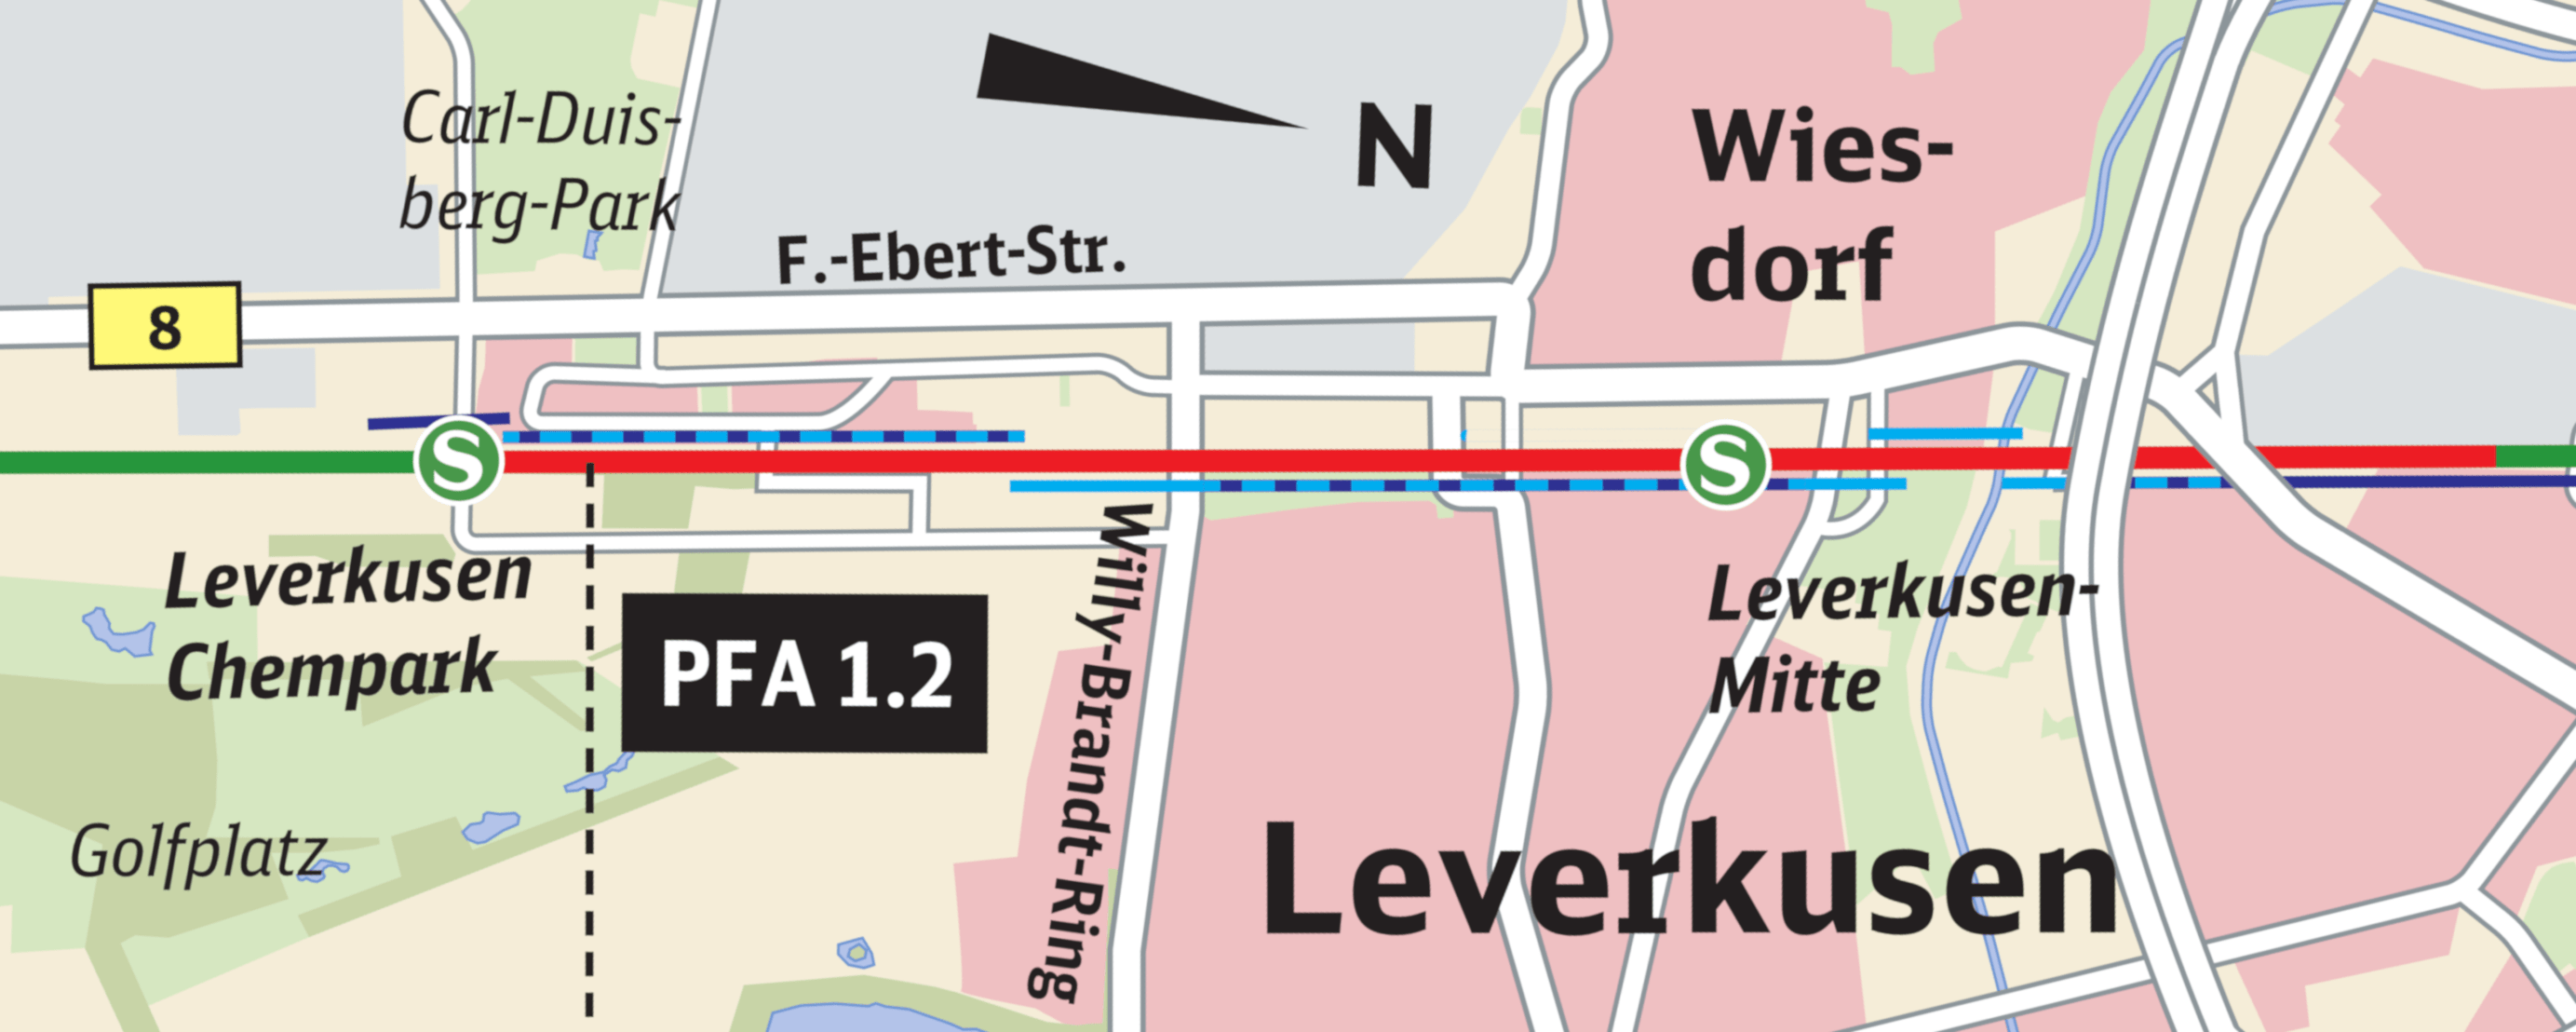 Kartenausschnitt für die aktuellen Maßnahmen vor Ort in Leverkusen